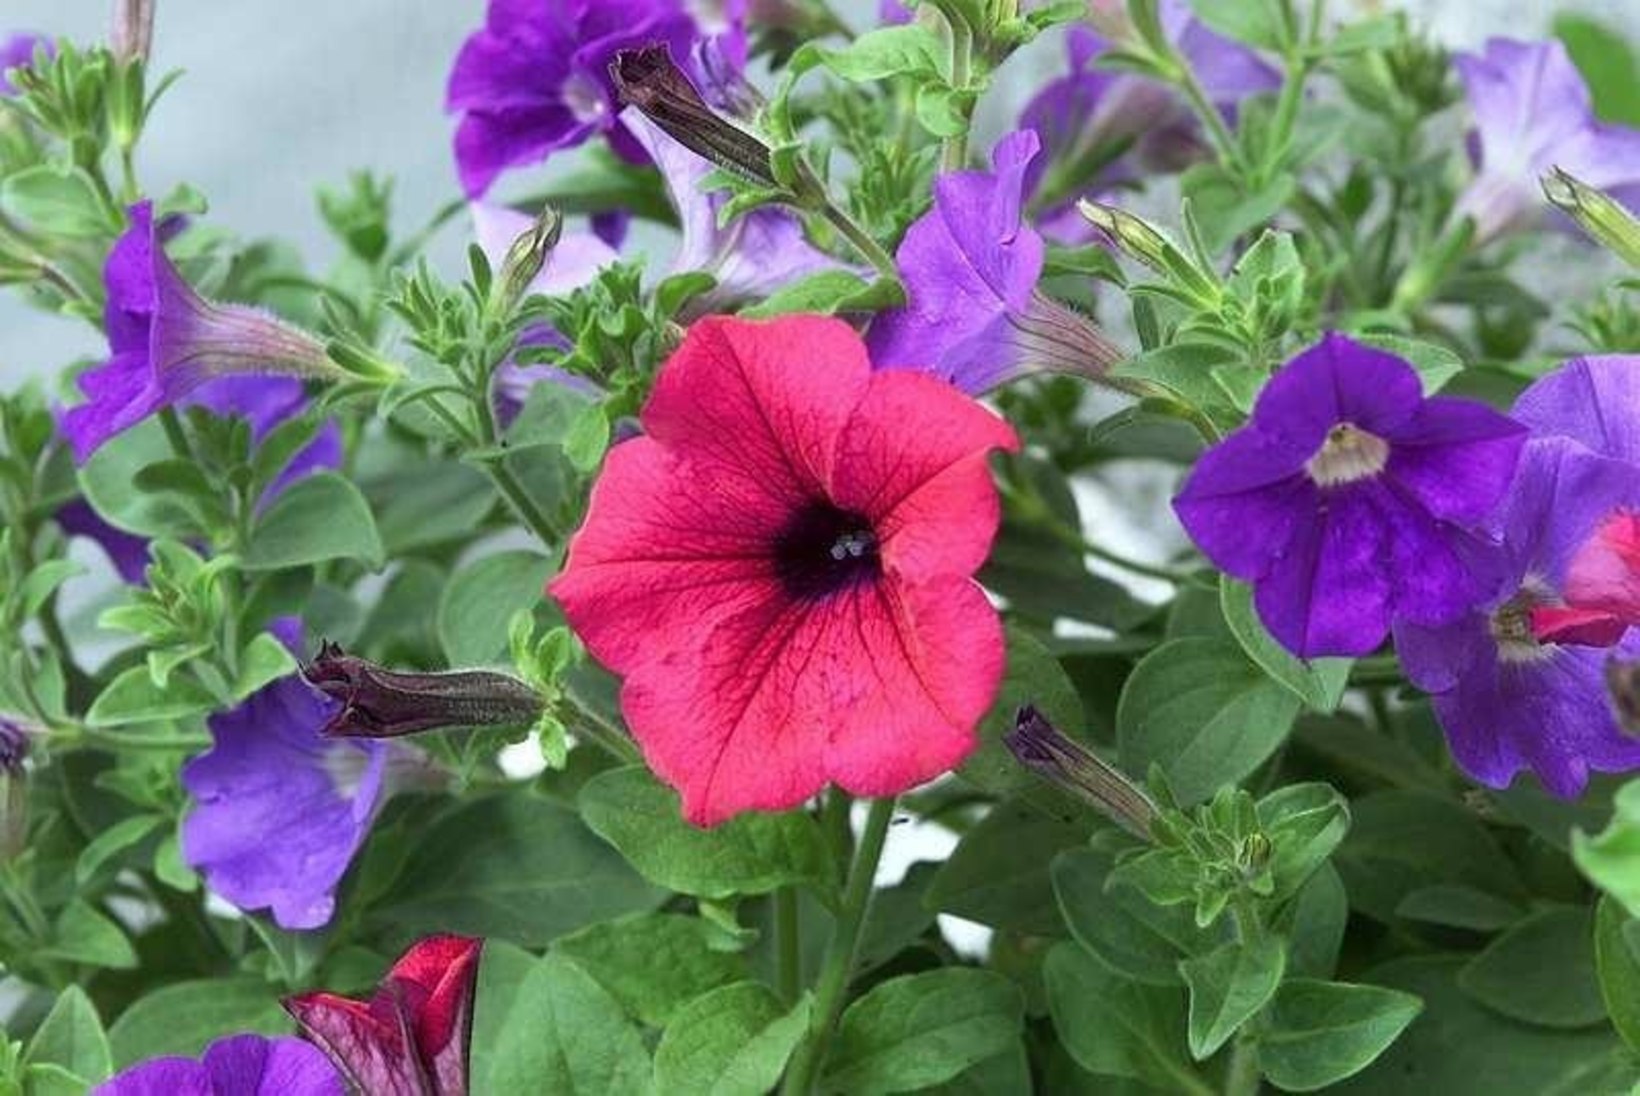 Õitest pakatavad lilleamplid: viis asjalikku amplitaime, milles ei pea pettuma